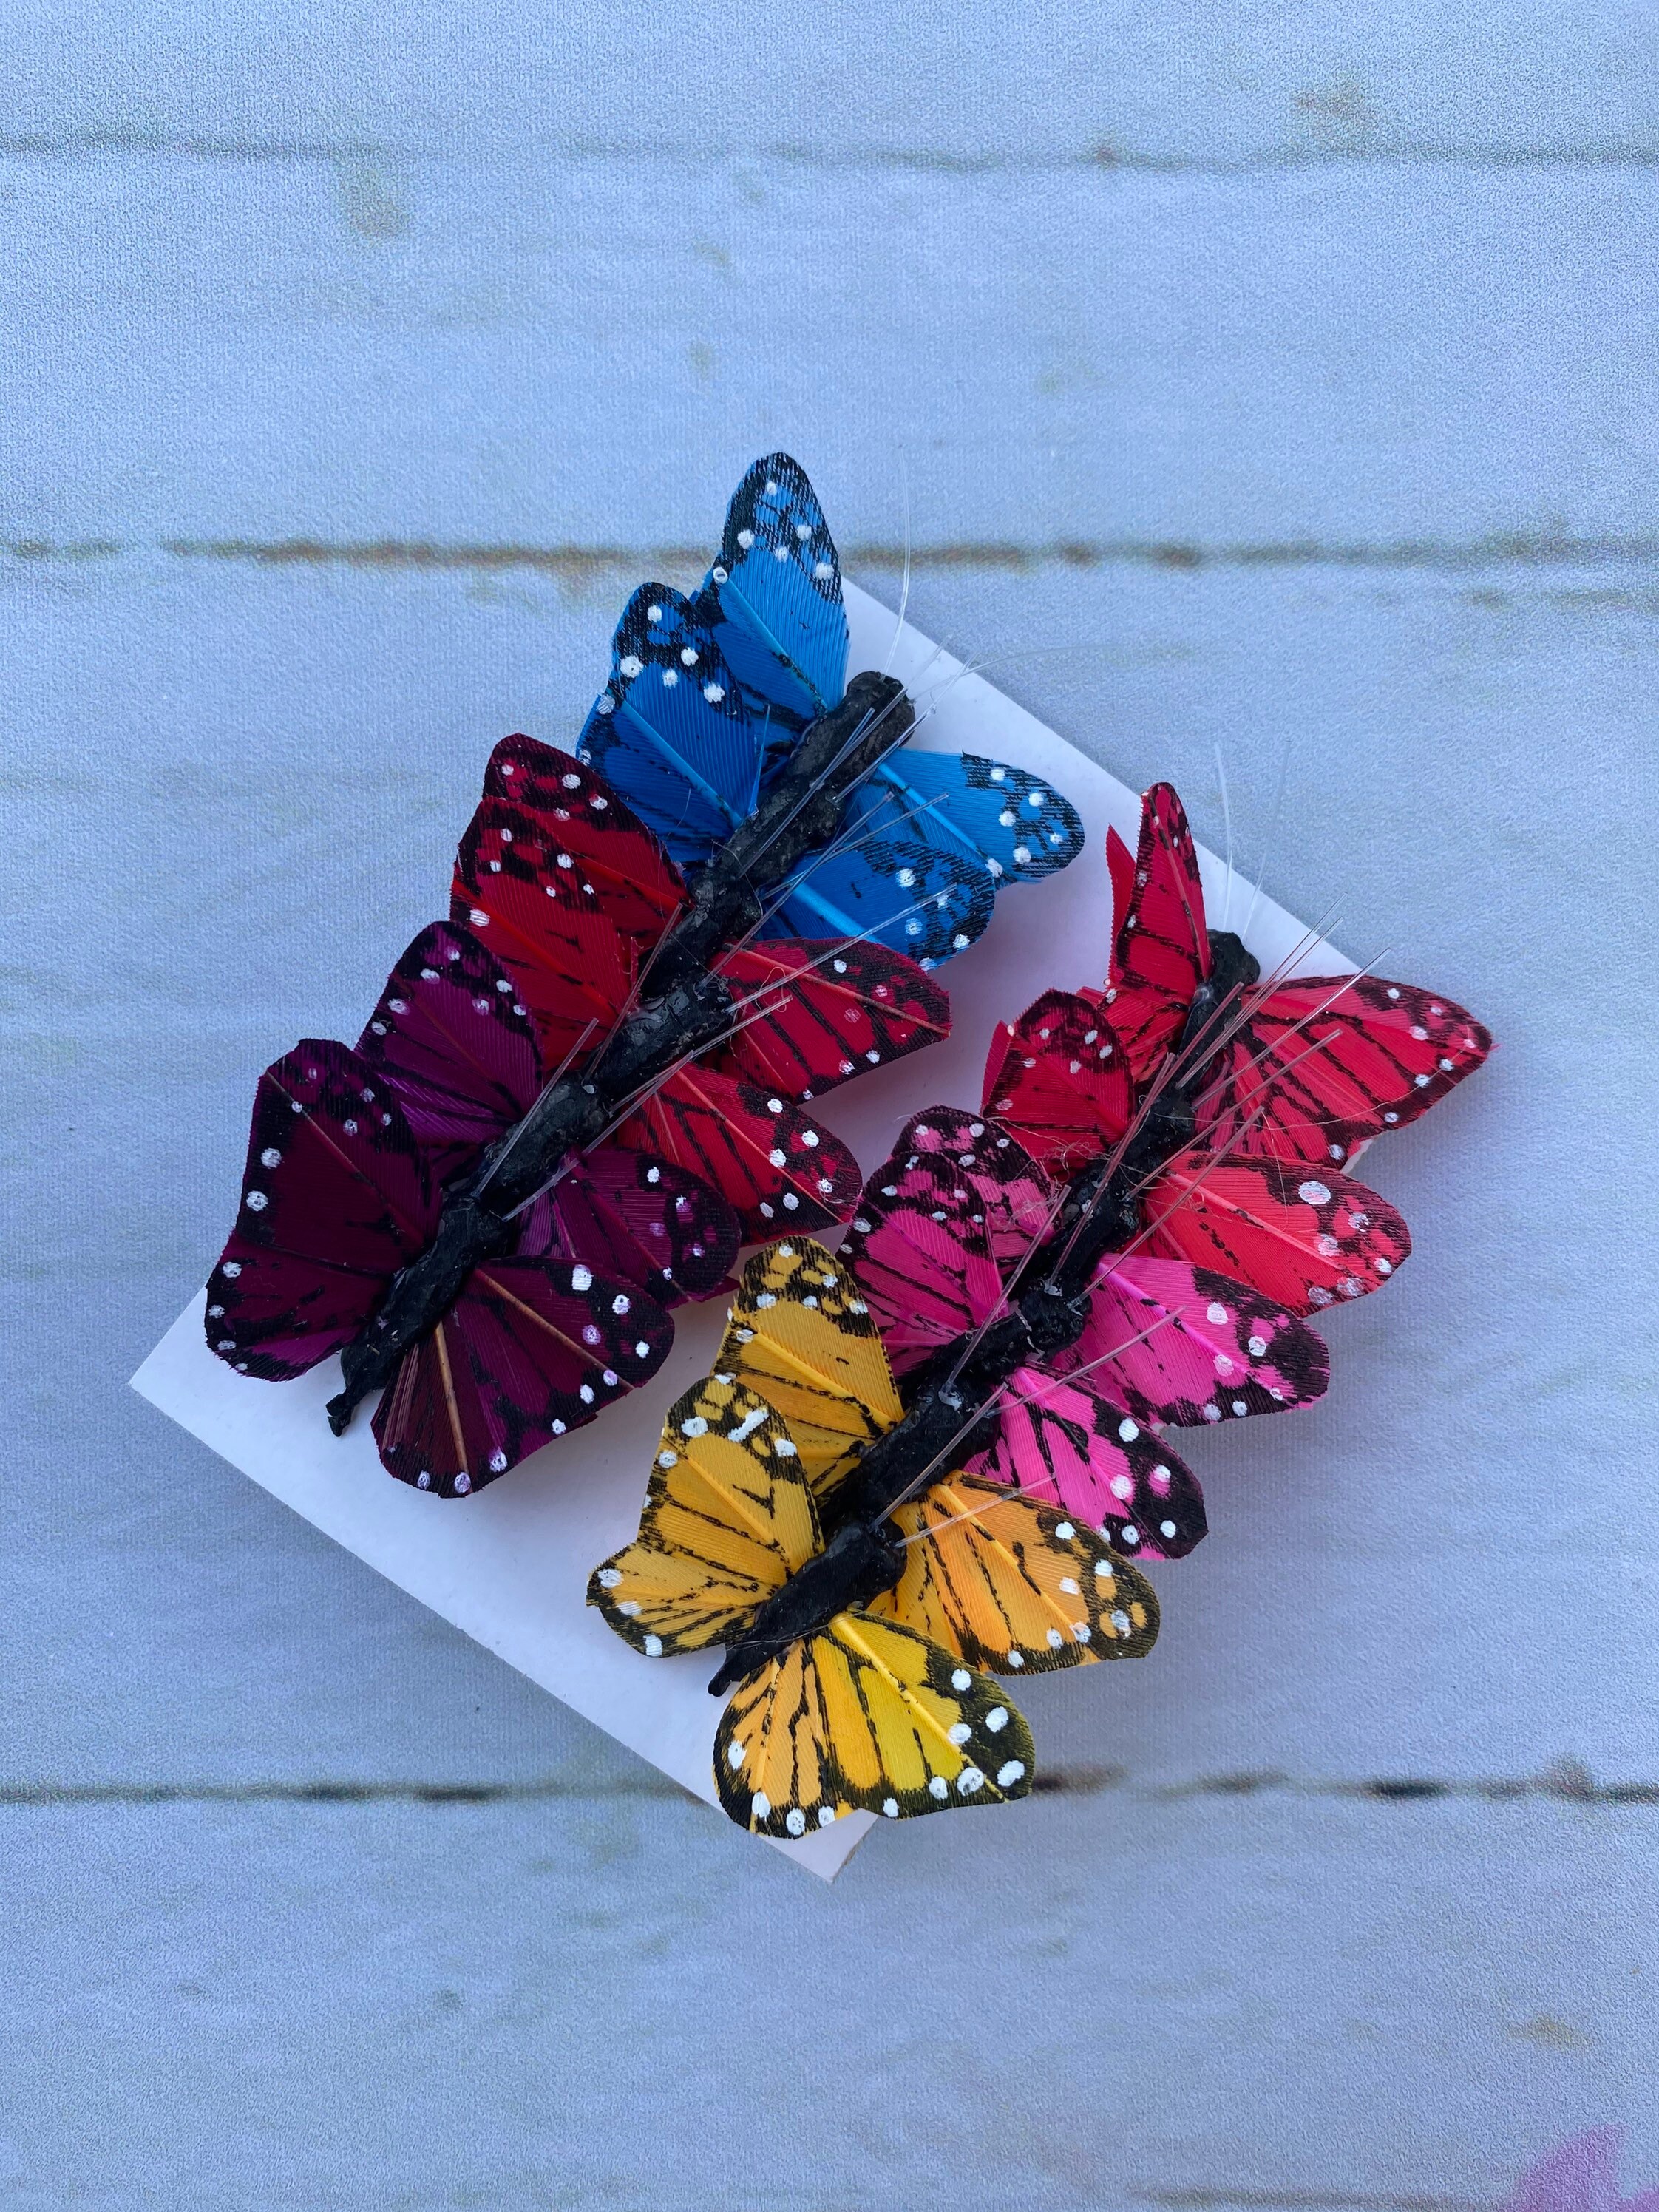 Buy 24 Small Rainbow Butterflies Feather Butterflies Artificial